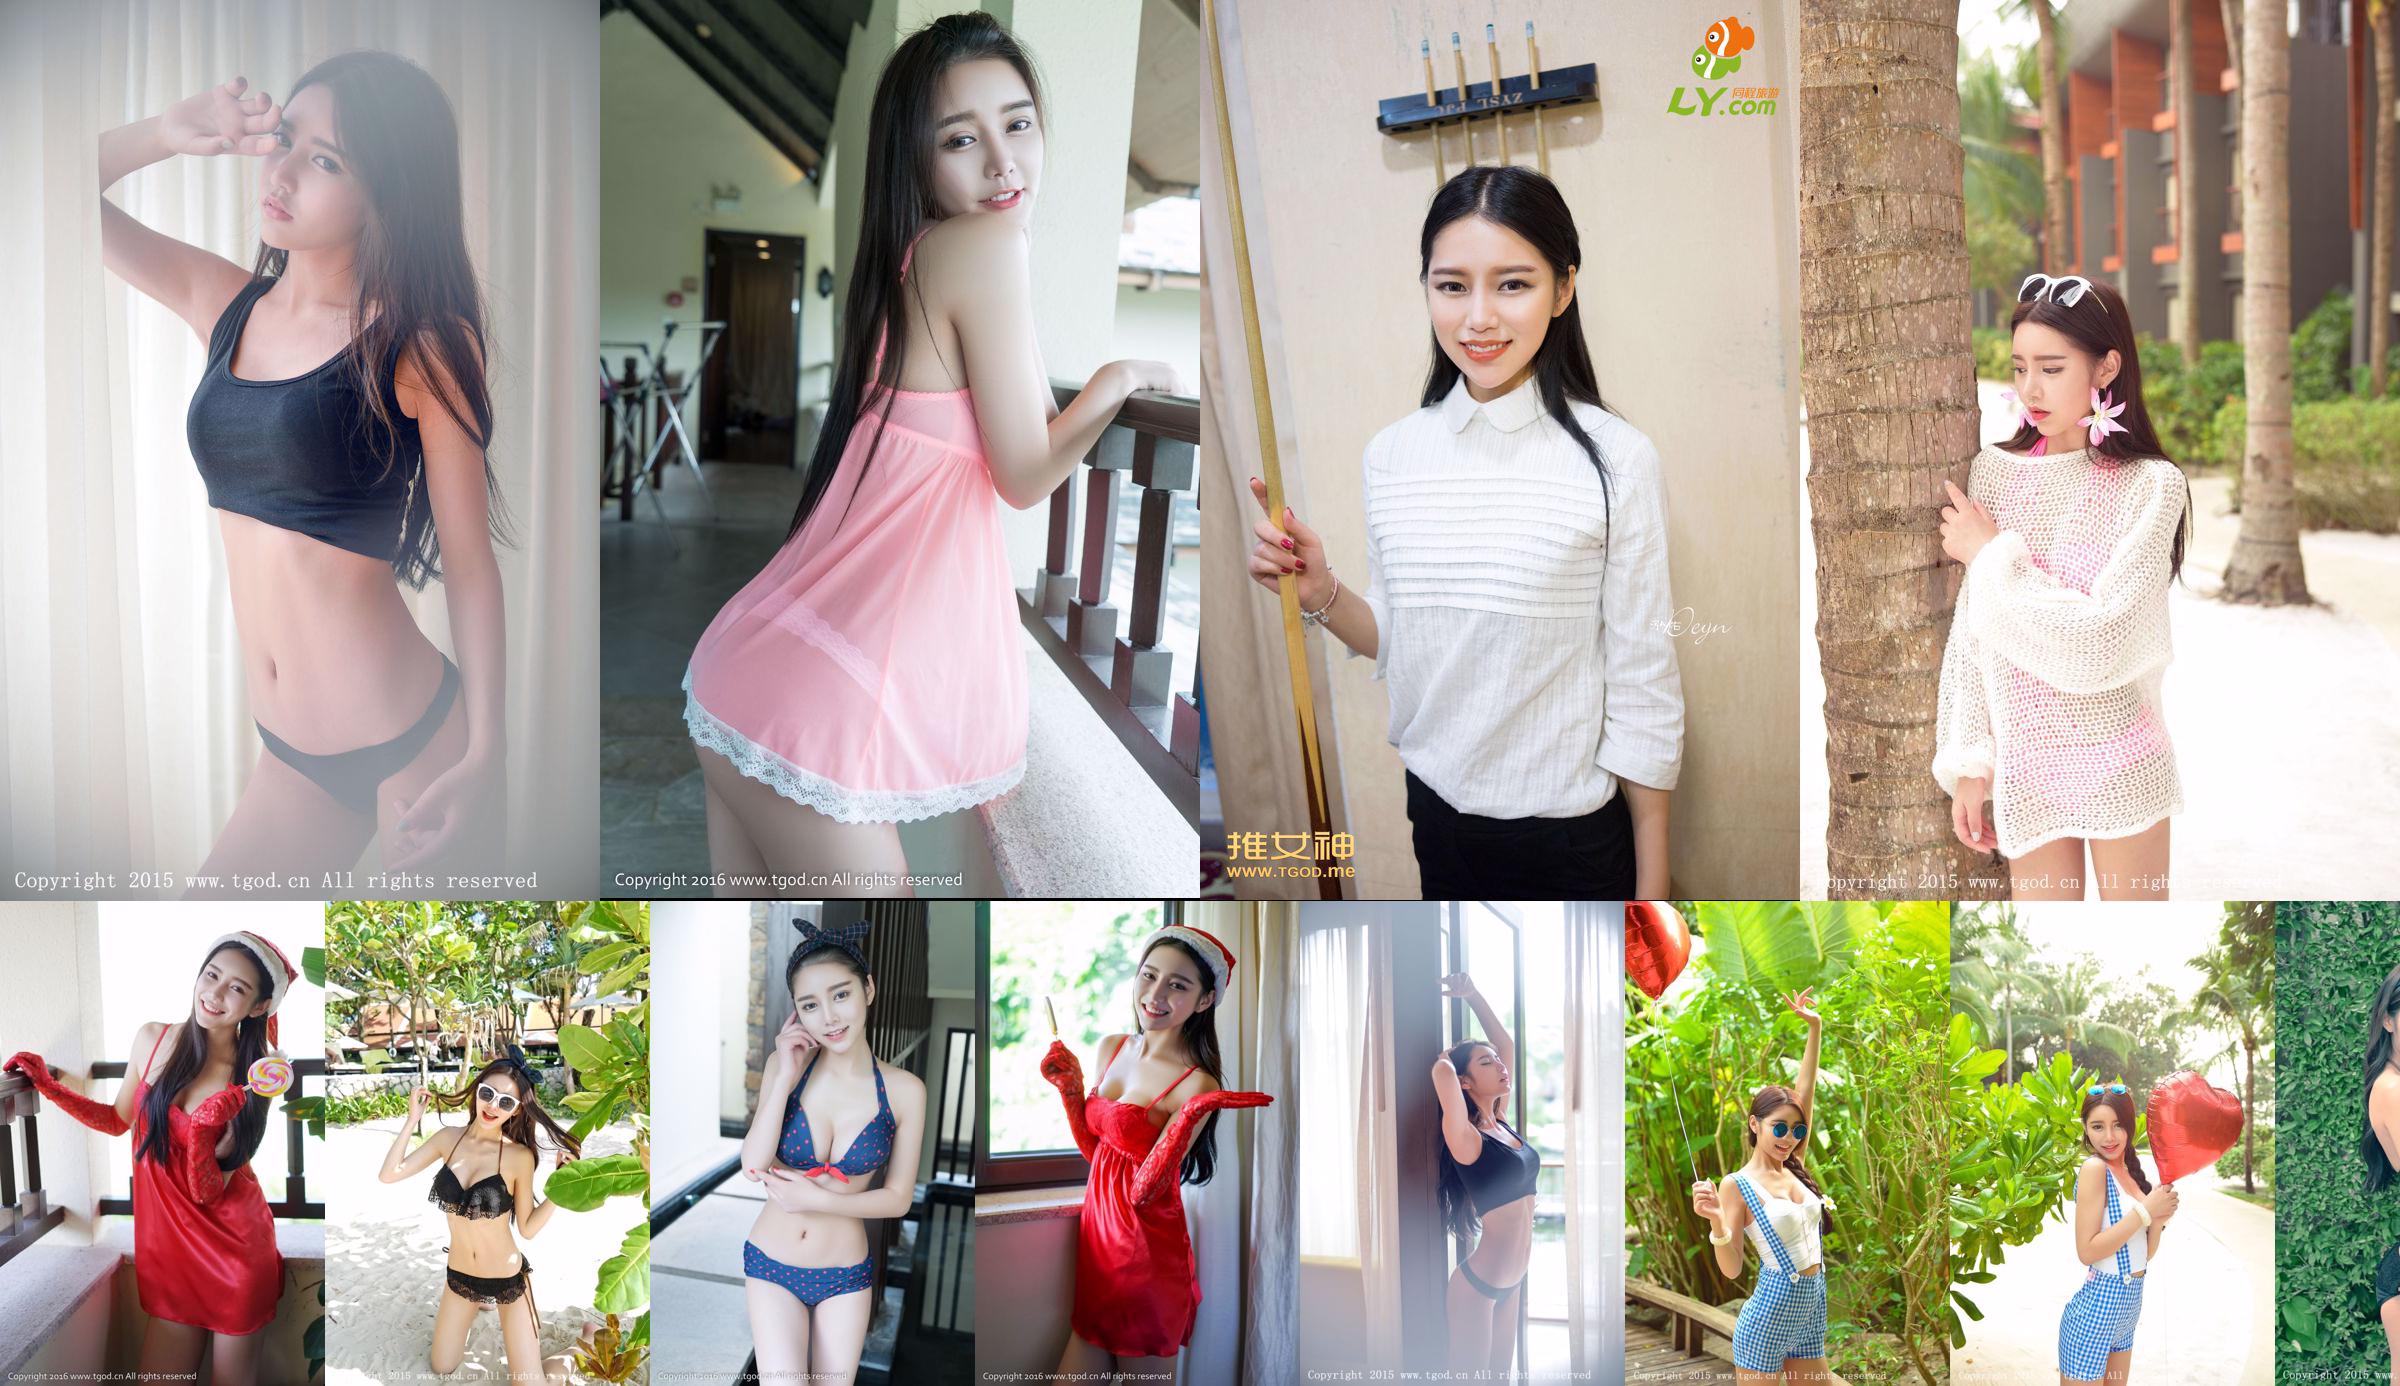 Xu Yanxin Mandy "Phuket Travel Shooting" Supreme Bikini Goddess [TGOD Push Goddess] No.3cd732 หน้า 4